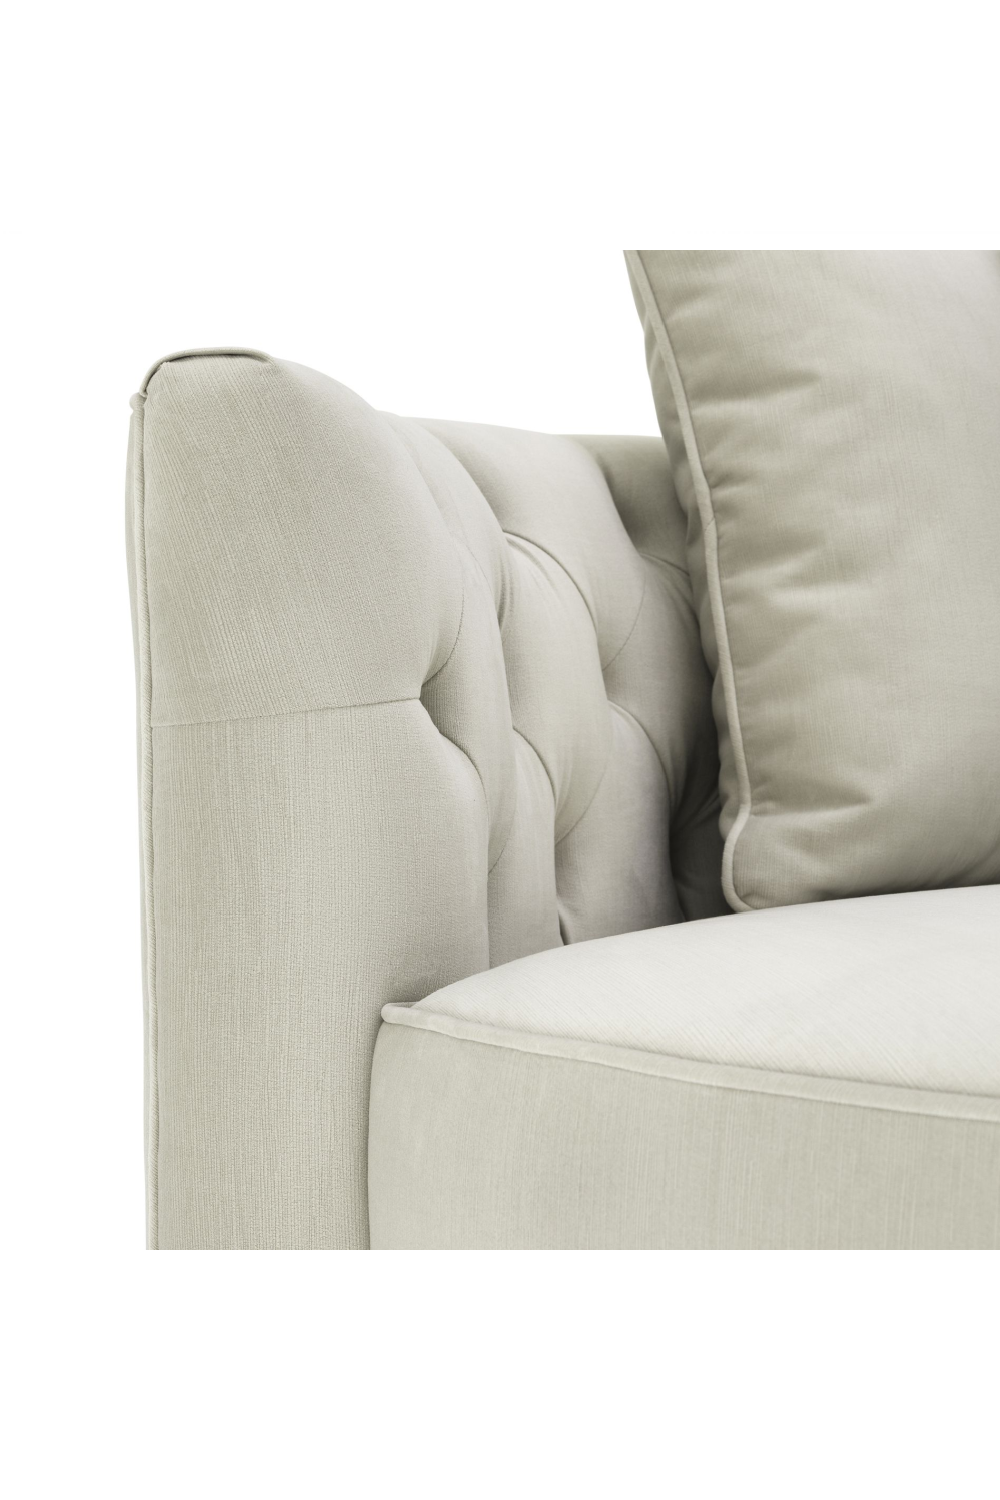 Round Gray Buttoned Sofa | Eichholtz Carlita | Oroa.com